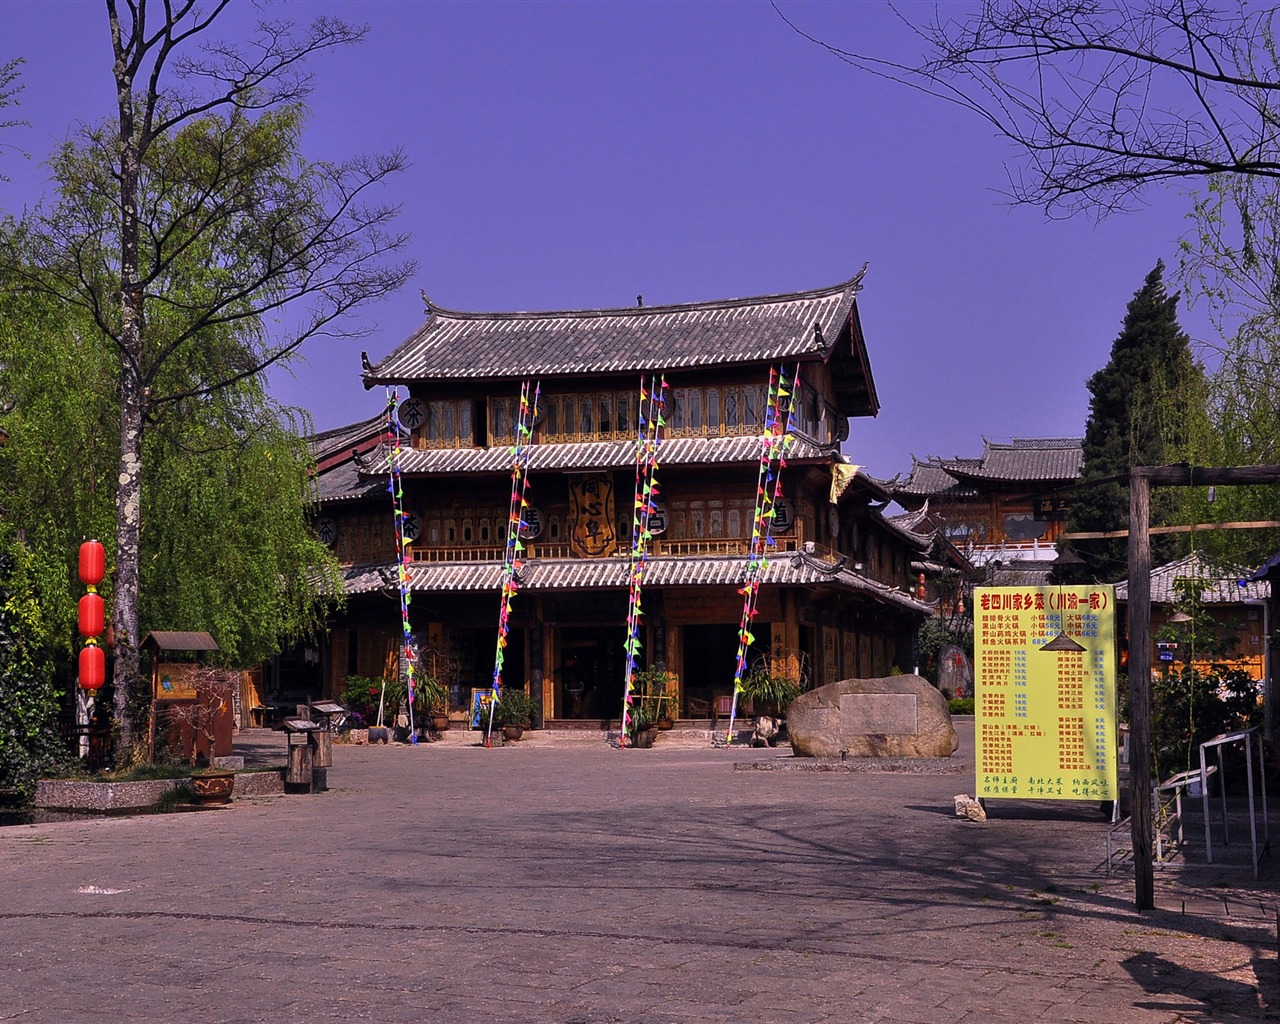 리장 고대 마을의 분위기 (2) (옛 홍콩 작동 확인) #18 - 1280x1024